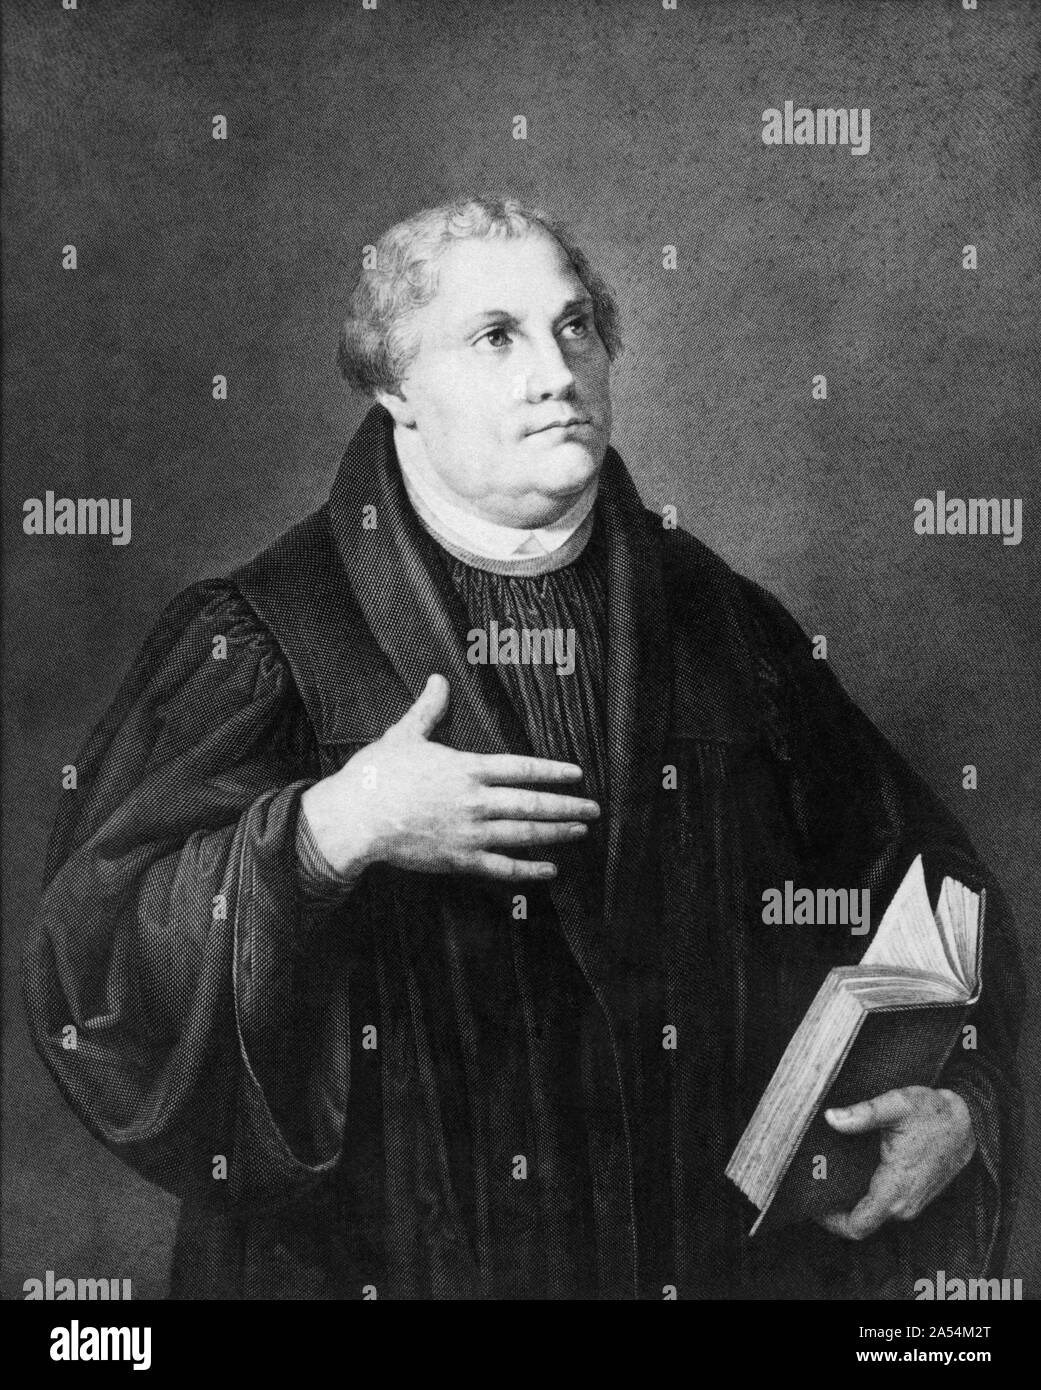 Martin Lutero (1483-1546), professore tedesco, teologo e figura chiave nella riforma protestante, nonché un traduttore della Bibbia in lingua volgare tedesco. (Incisione da un ritratto dipinto da Lucas Cranach). Foto Stock